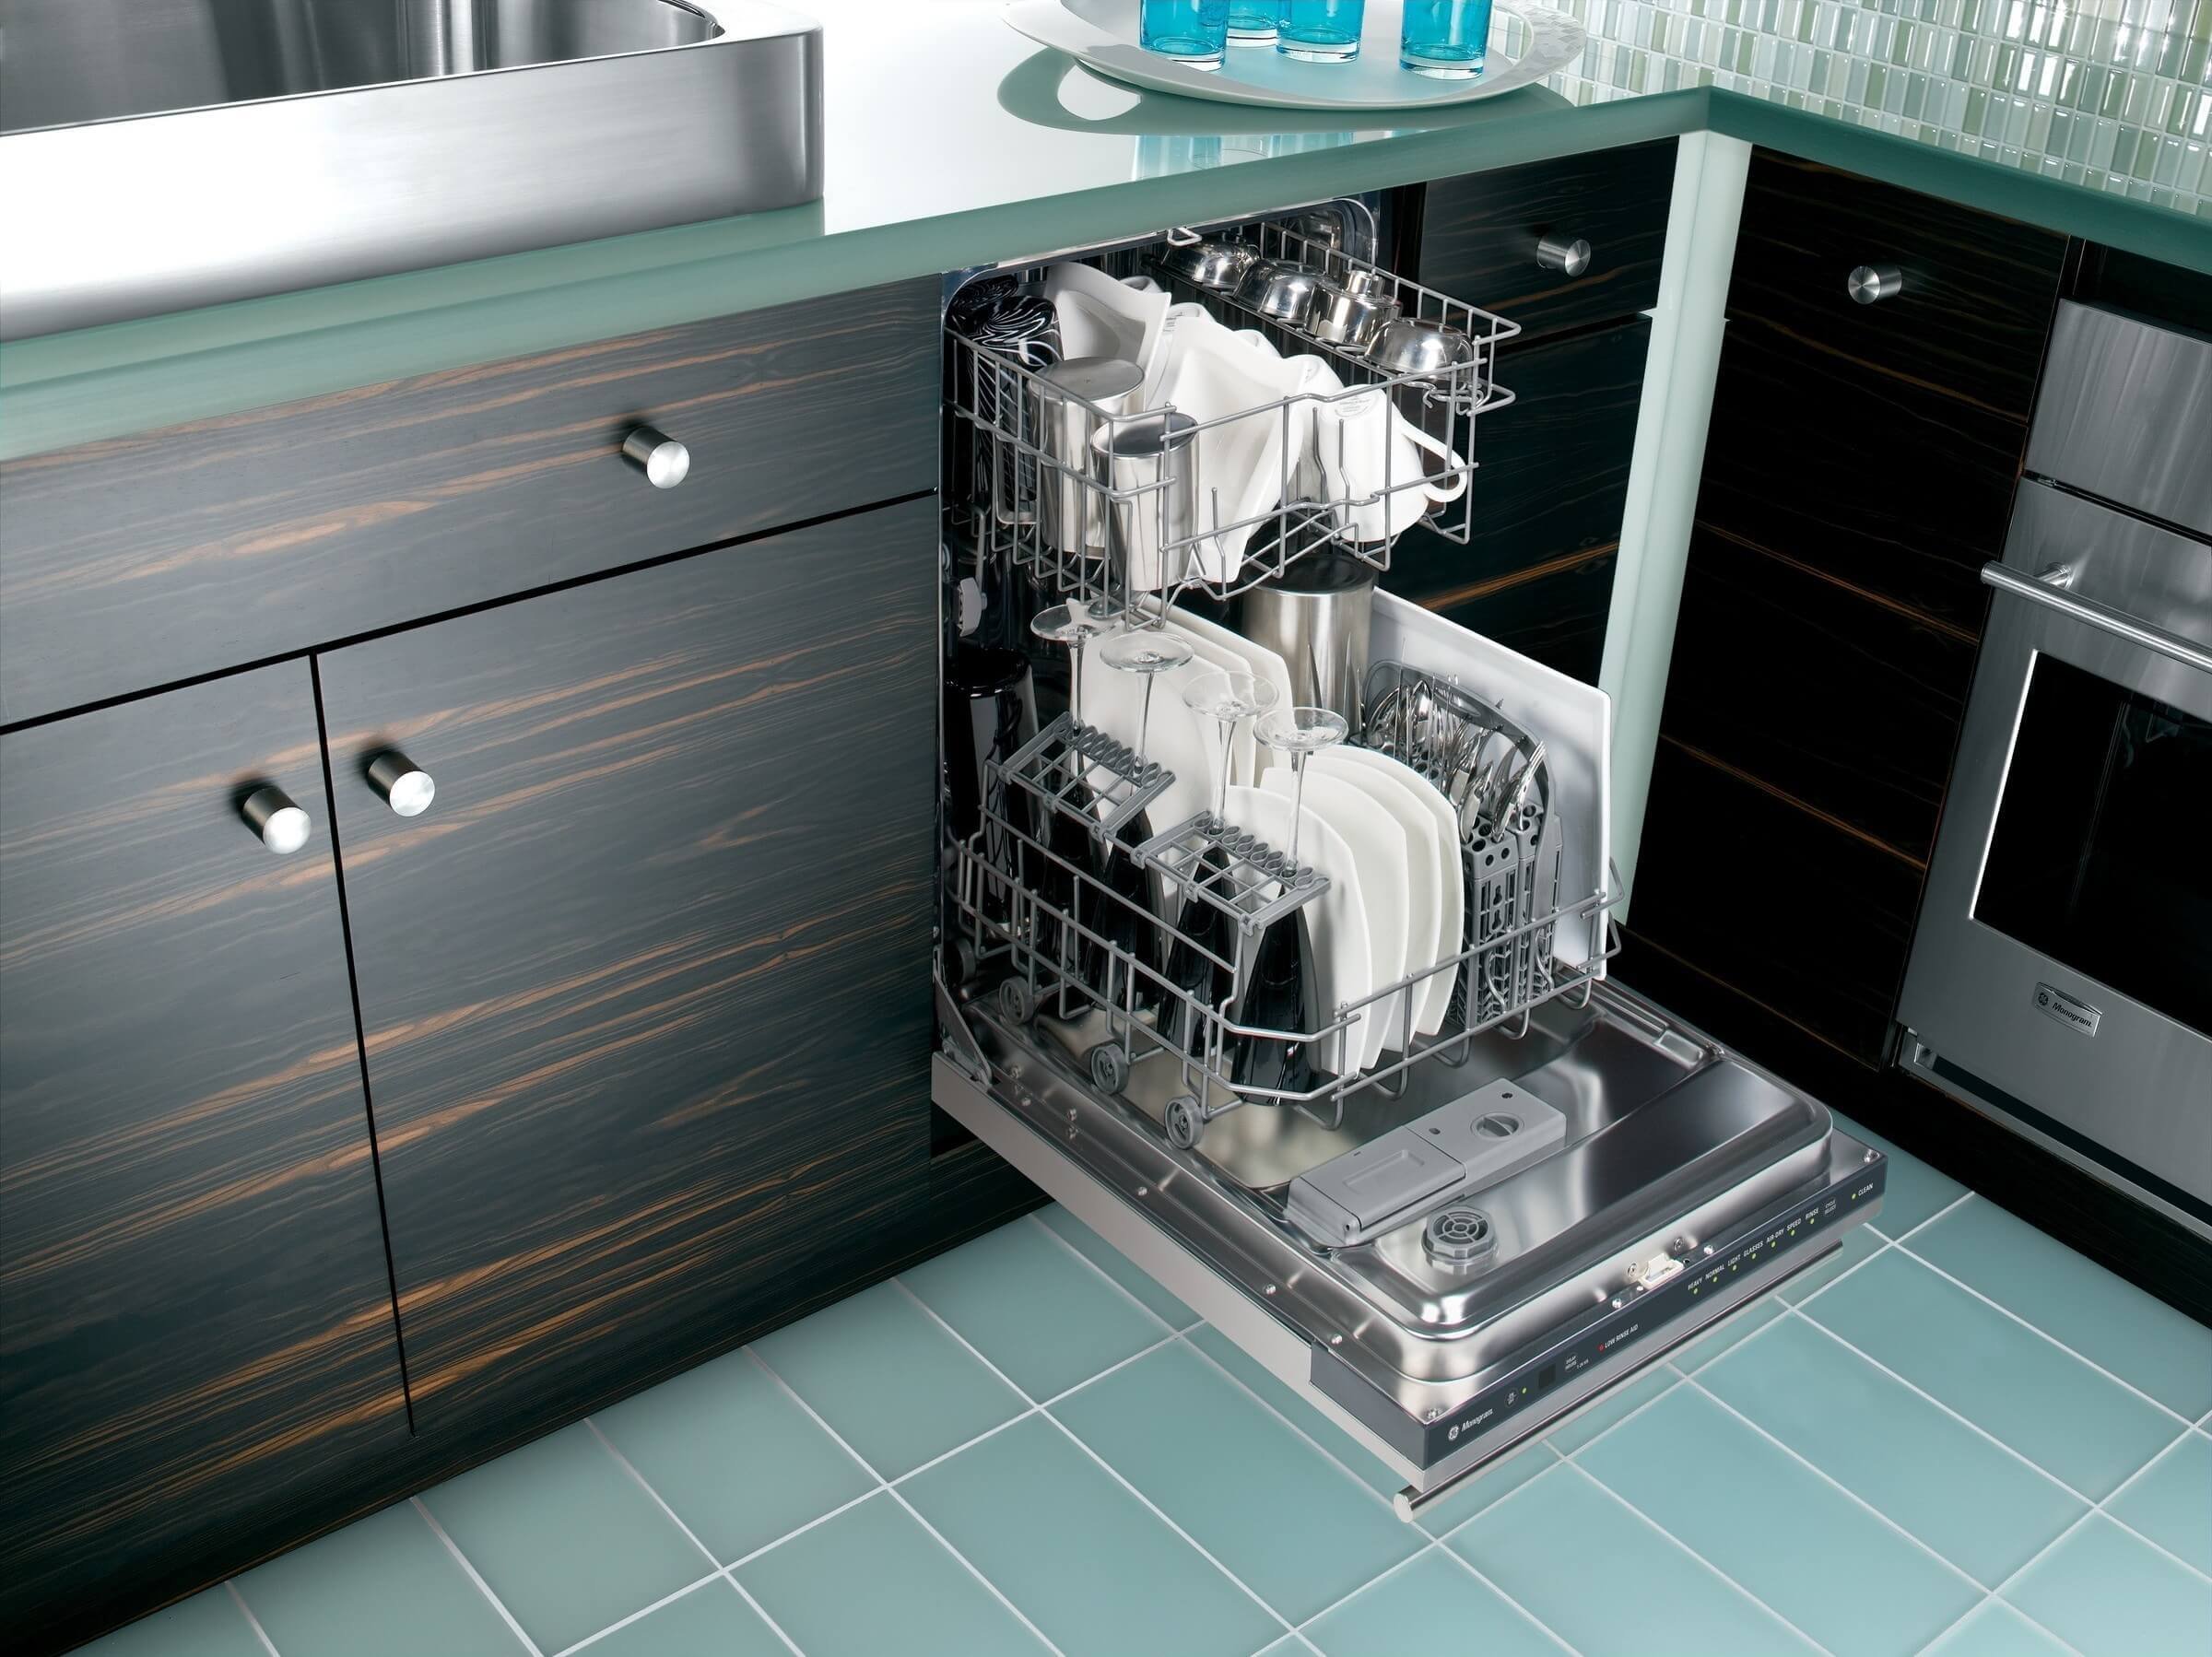 Как встроить посудомоечную машину в готовую. Полувстраиваемая посудомоечная машина 45 см. Посудомоечная машина Dishwasher Drawers. Посудомоечная машина икеа 60 см встраиваемая. Встраиваемая посудомоечная машина 45 см на кухне.